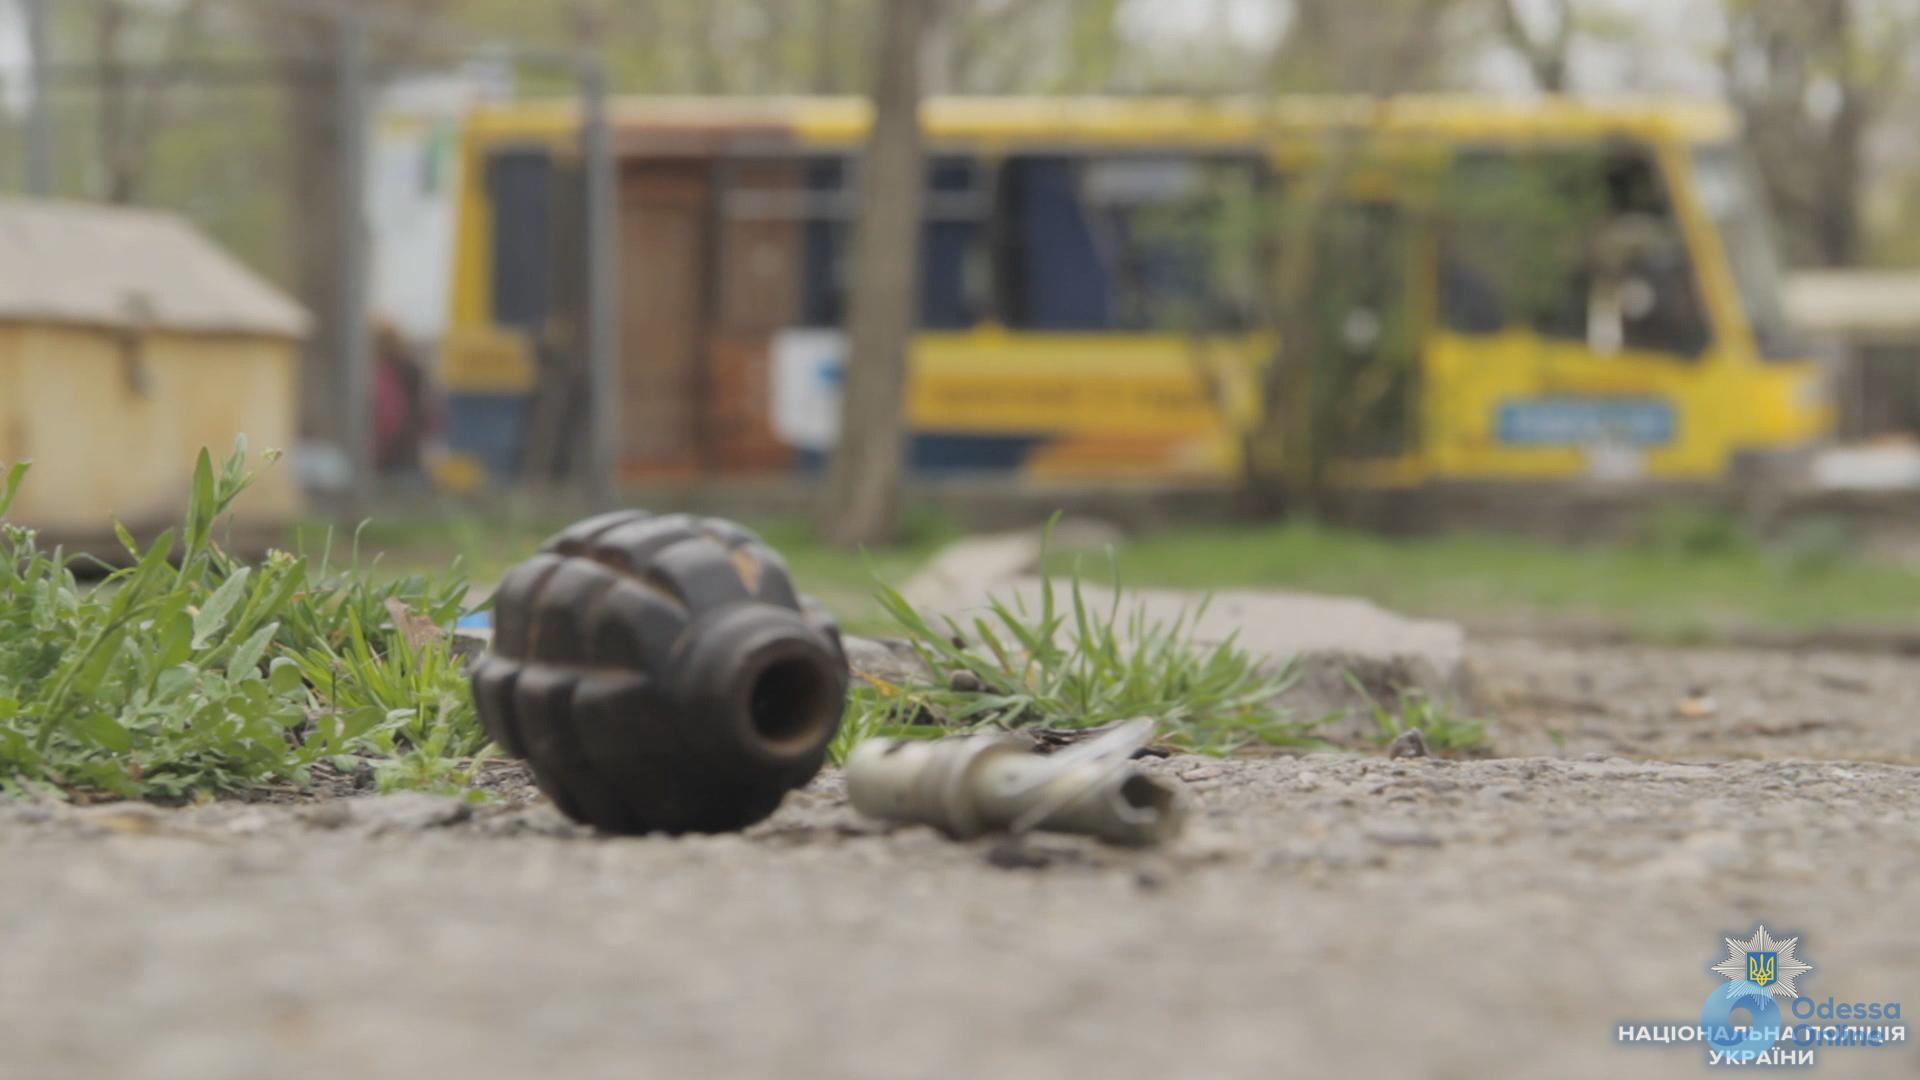 Переполох на Итальянском бульваре: найденная граната оказалась учебной